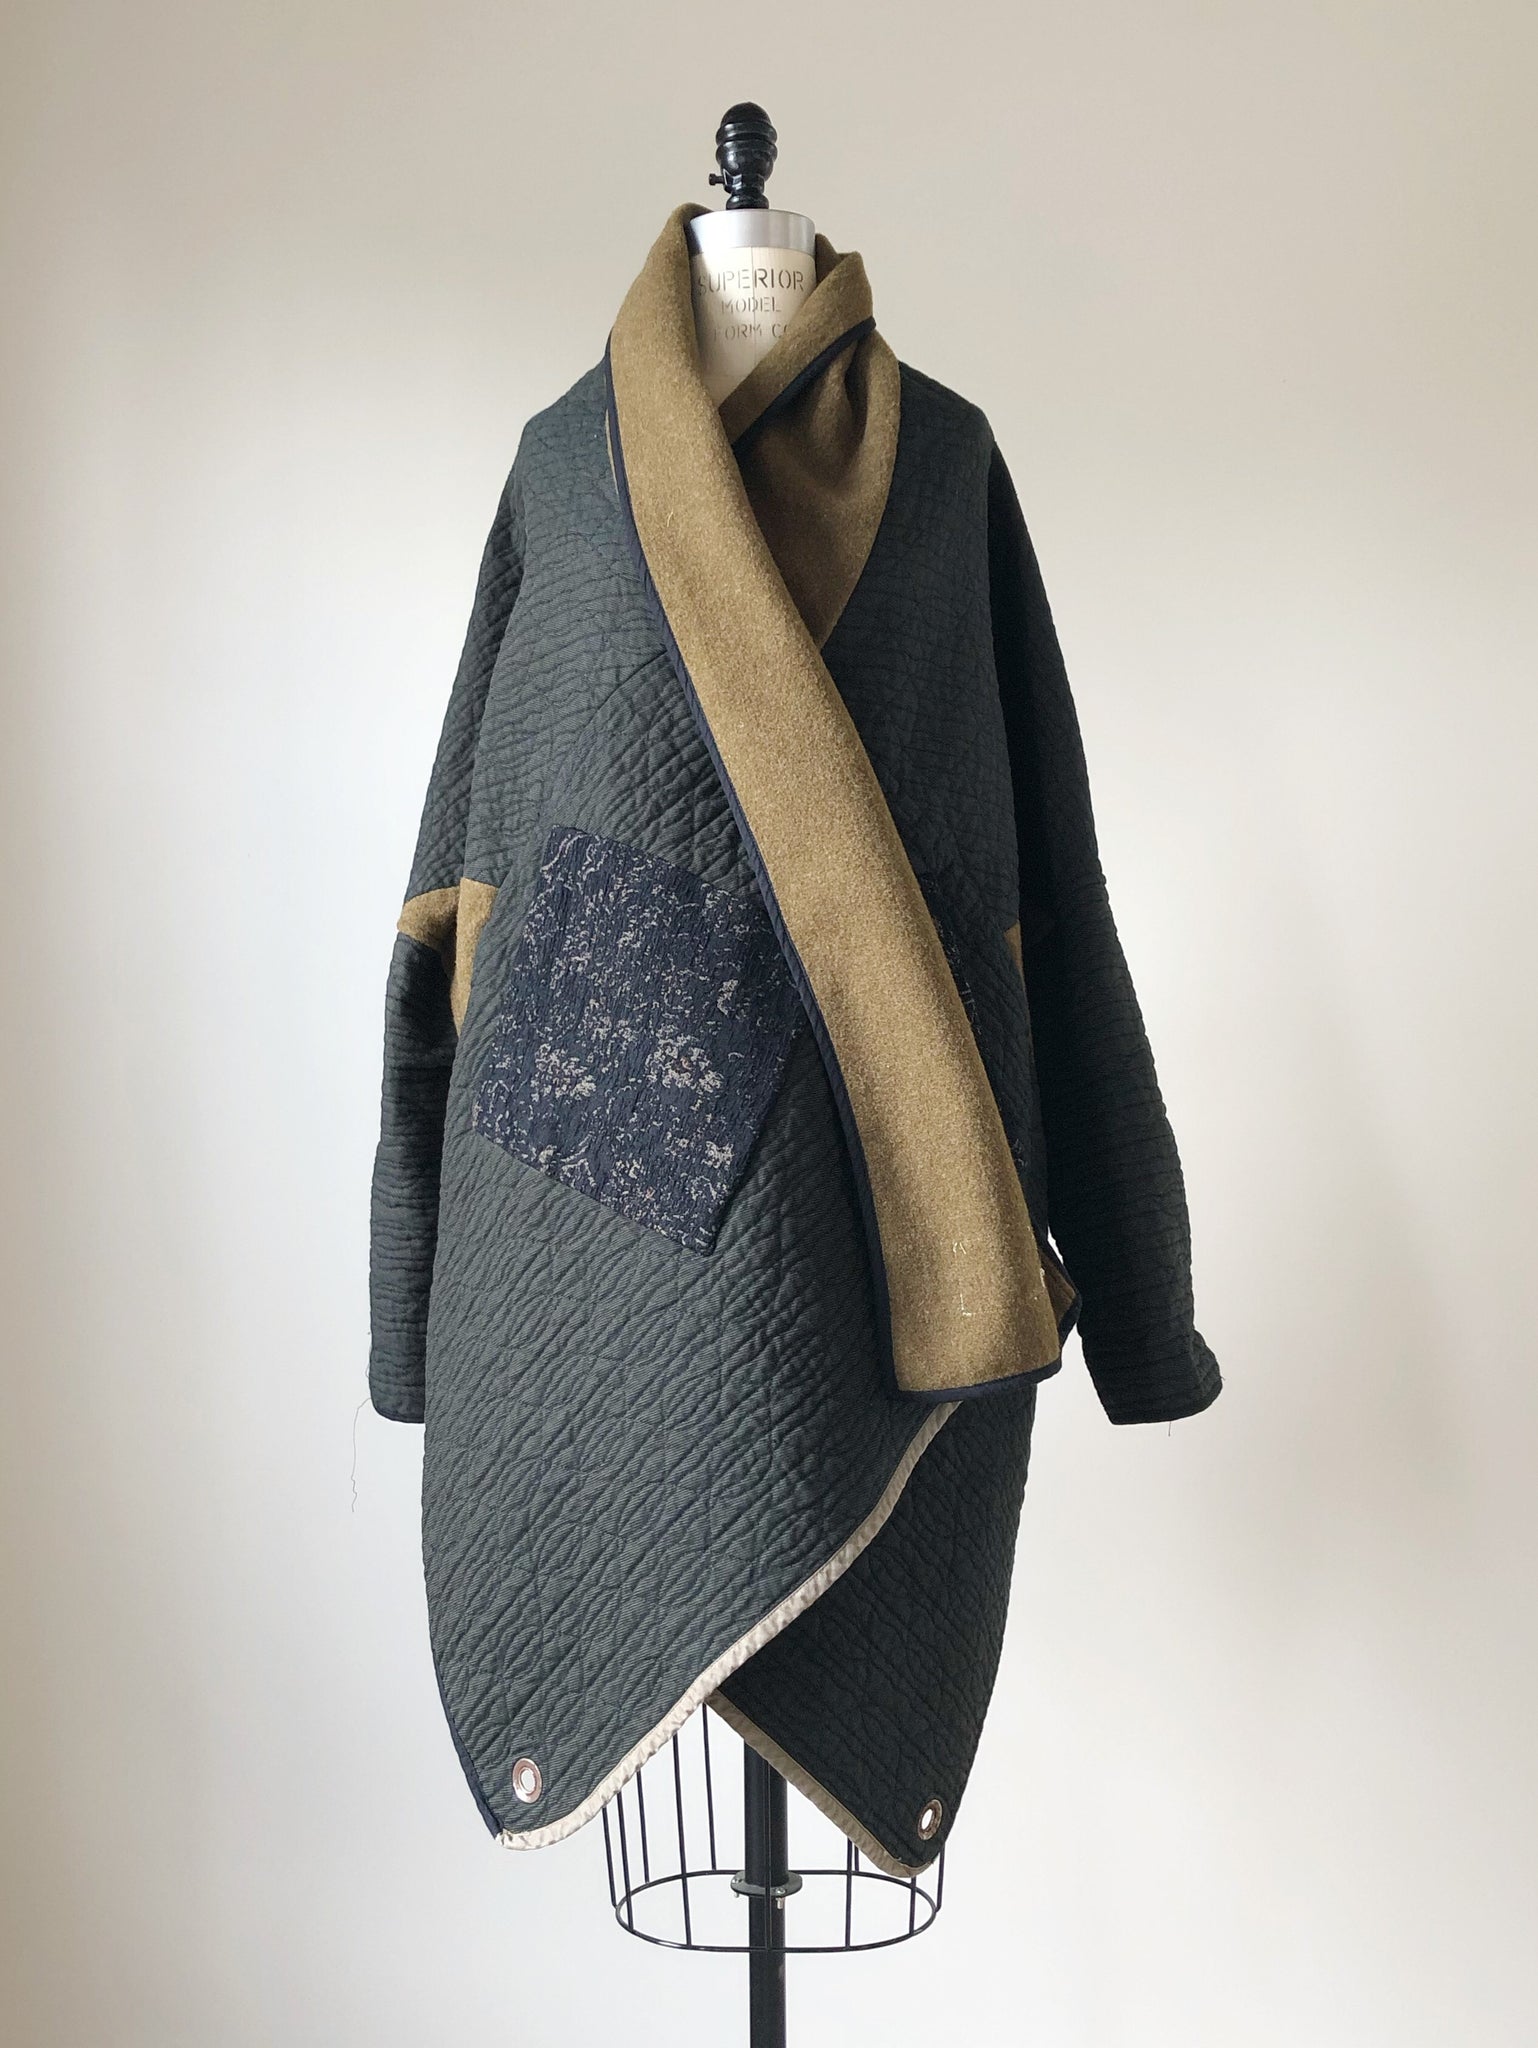 moving blanket samurai cocoon jacket – garygraham422